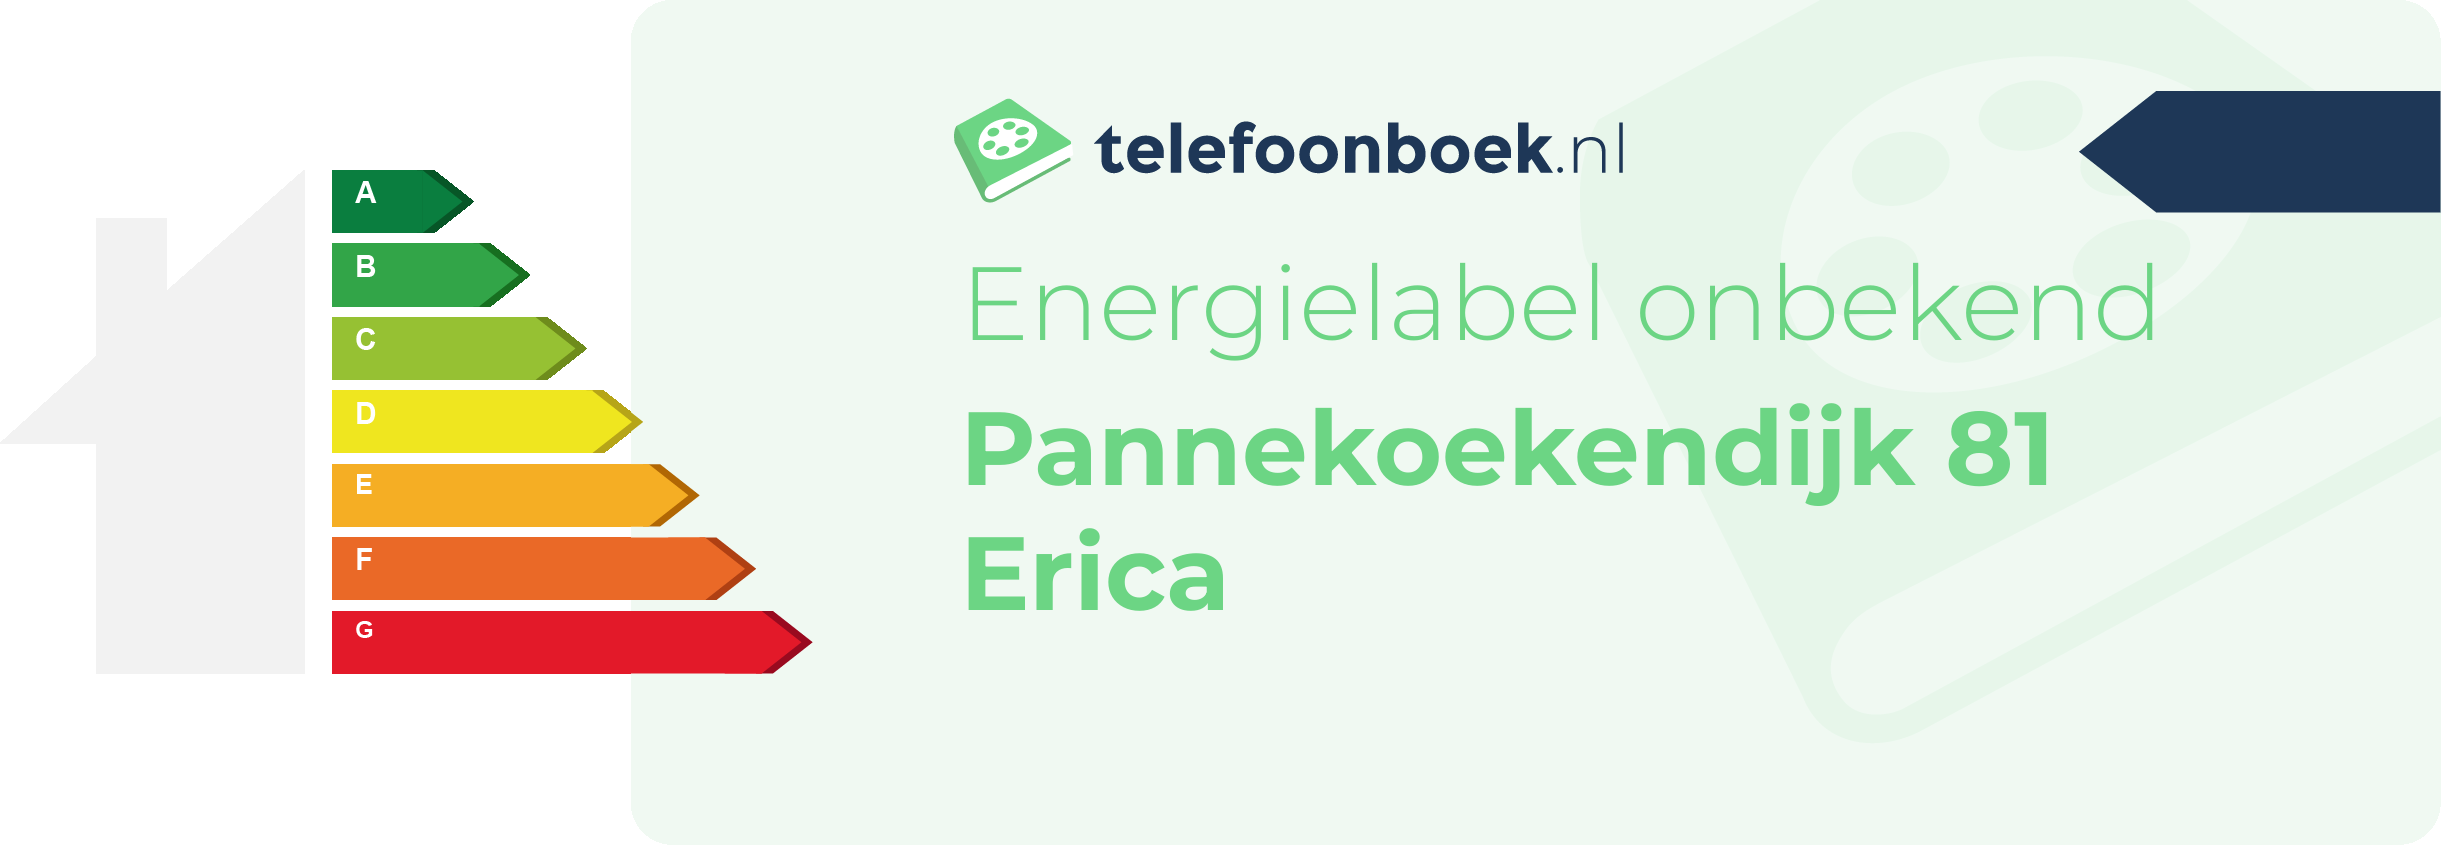 Energielabel Pannekoekendijk 81 Erica